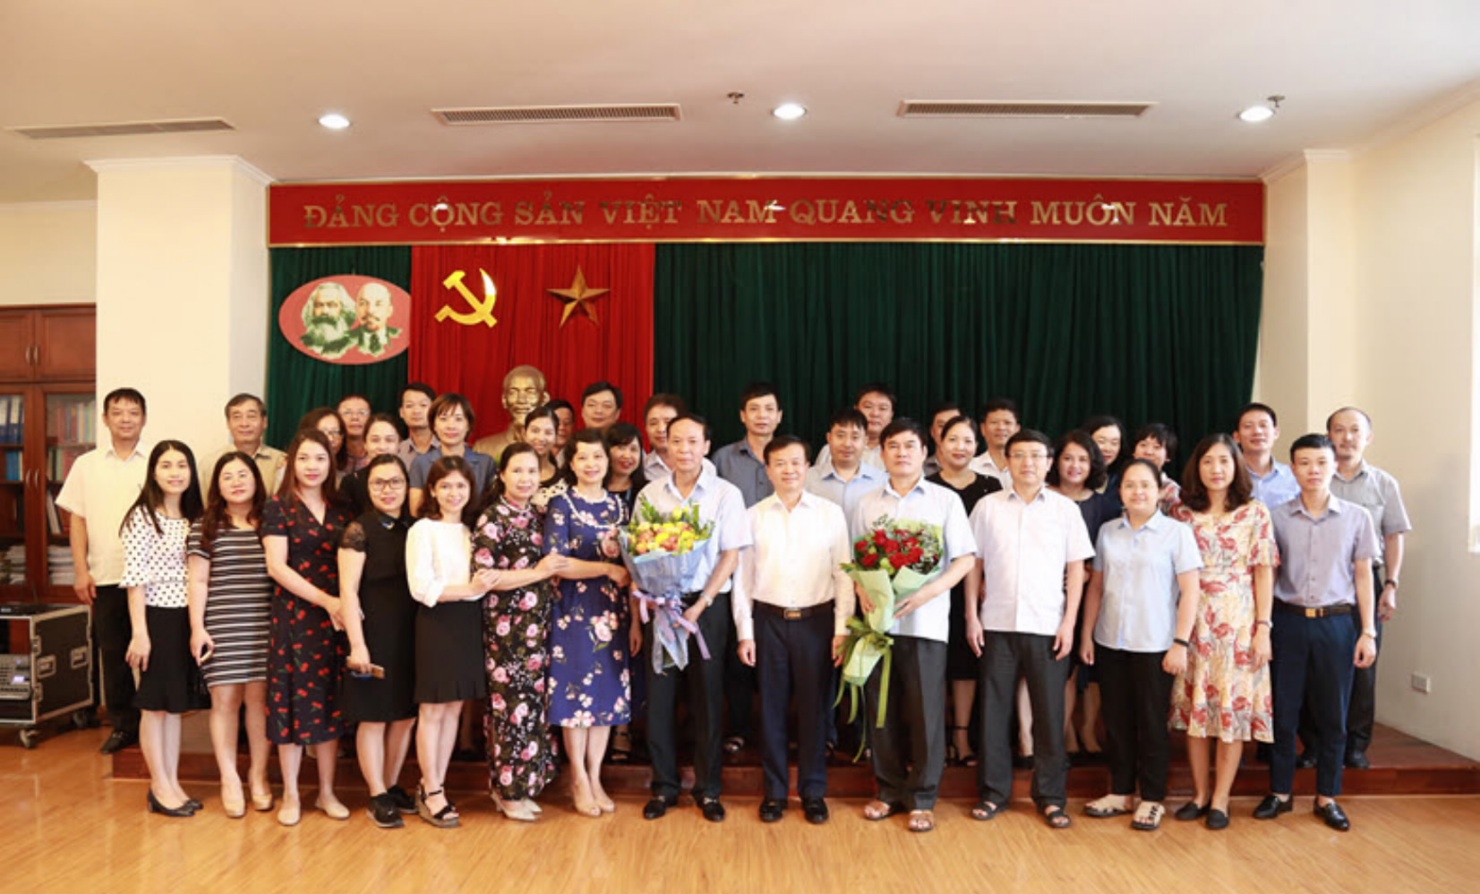 Phó Tổng Giám đốc KBNN Nguyễn Quang Vinh chúc mừng và chụp ảnh lưu niệm cùng tập thể cán bộ công chức 2 đơn vị Kho quỹ và Thanh tra - Kiểm tra